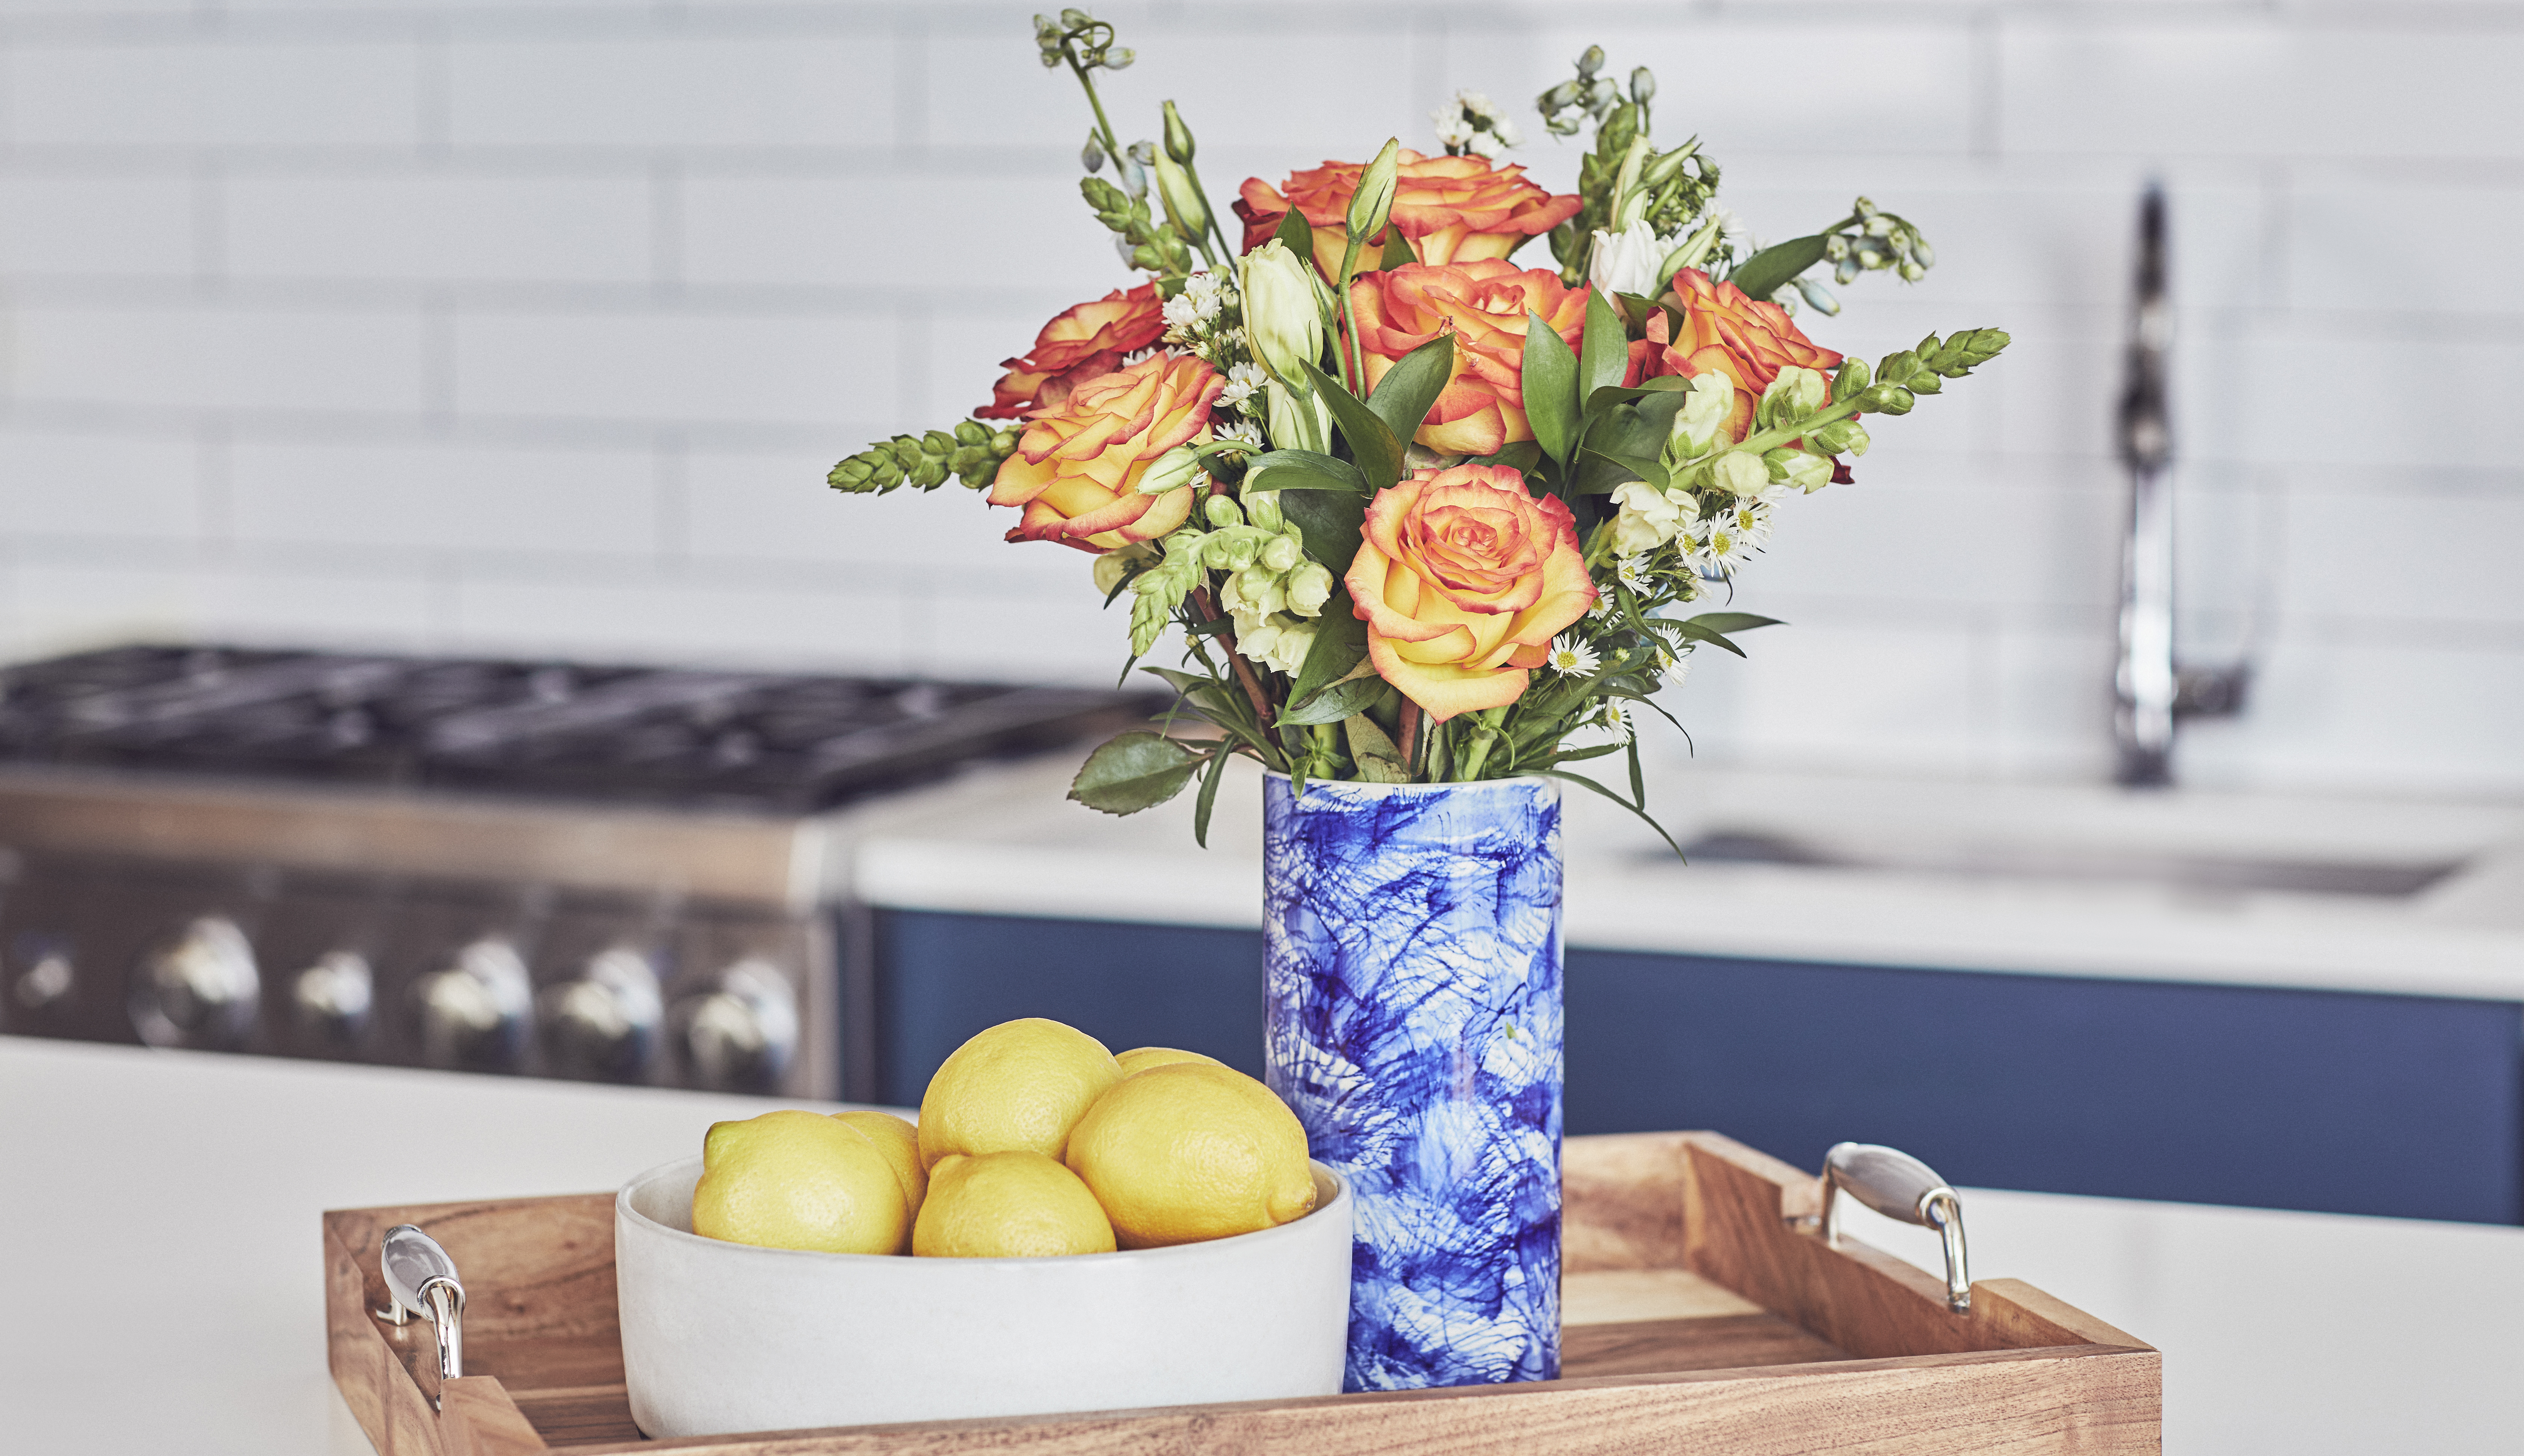 Fresh flowers in blue vase